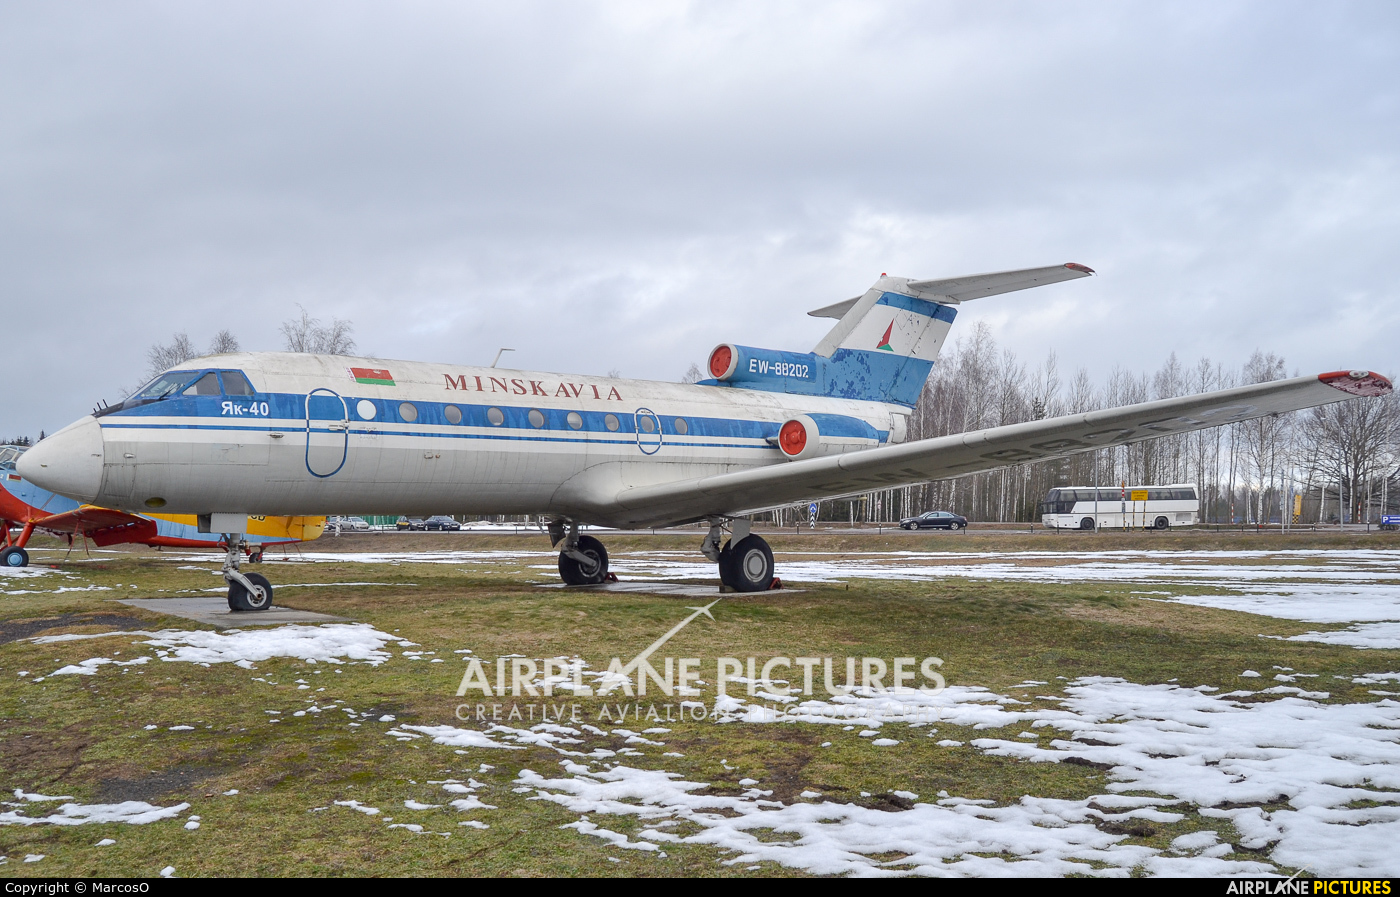 Minskavia EW-88202 aircraft at Minsk Intl